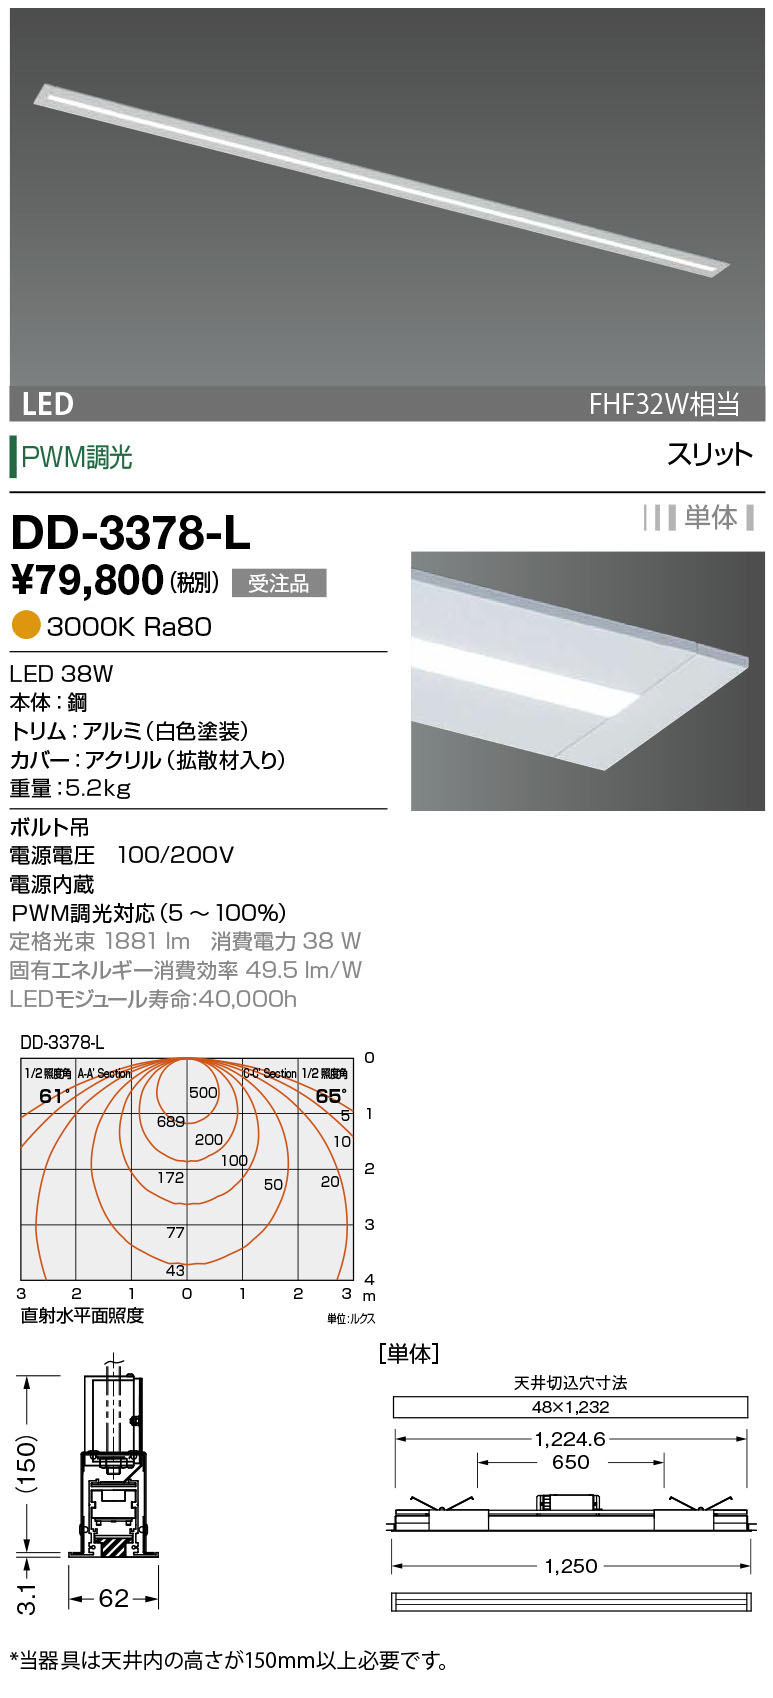 山田照明 山田照明(YAMADA） DD-3378-L LED一体型ベースライト PWM調光 スリット 電球色 単体 受注生産品 